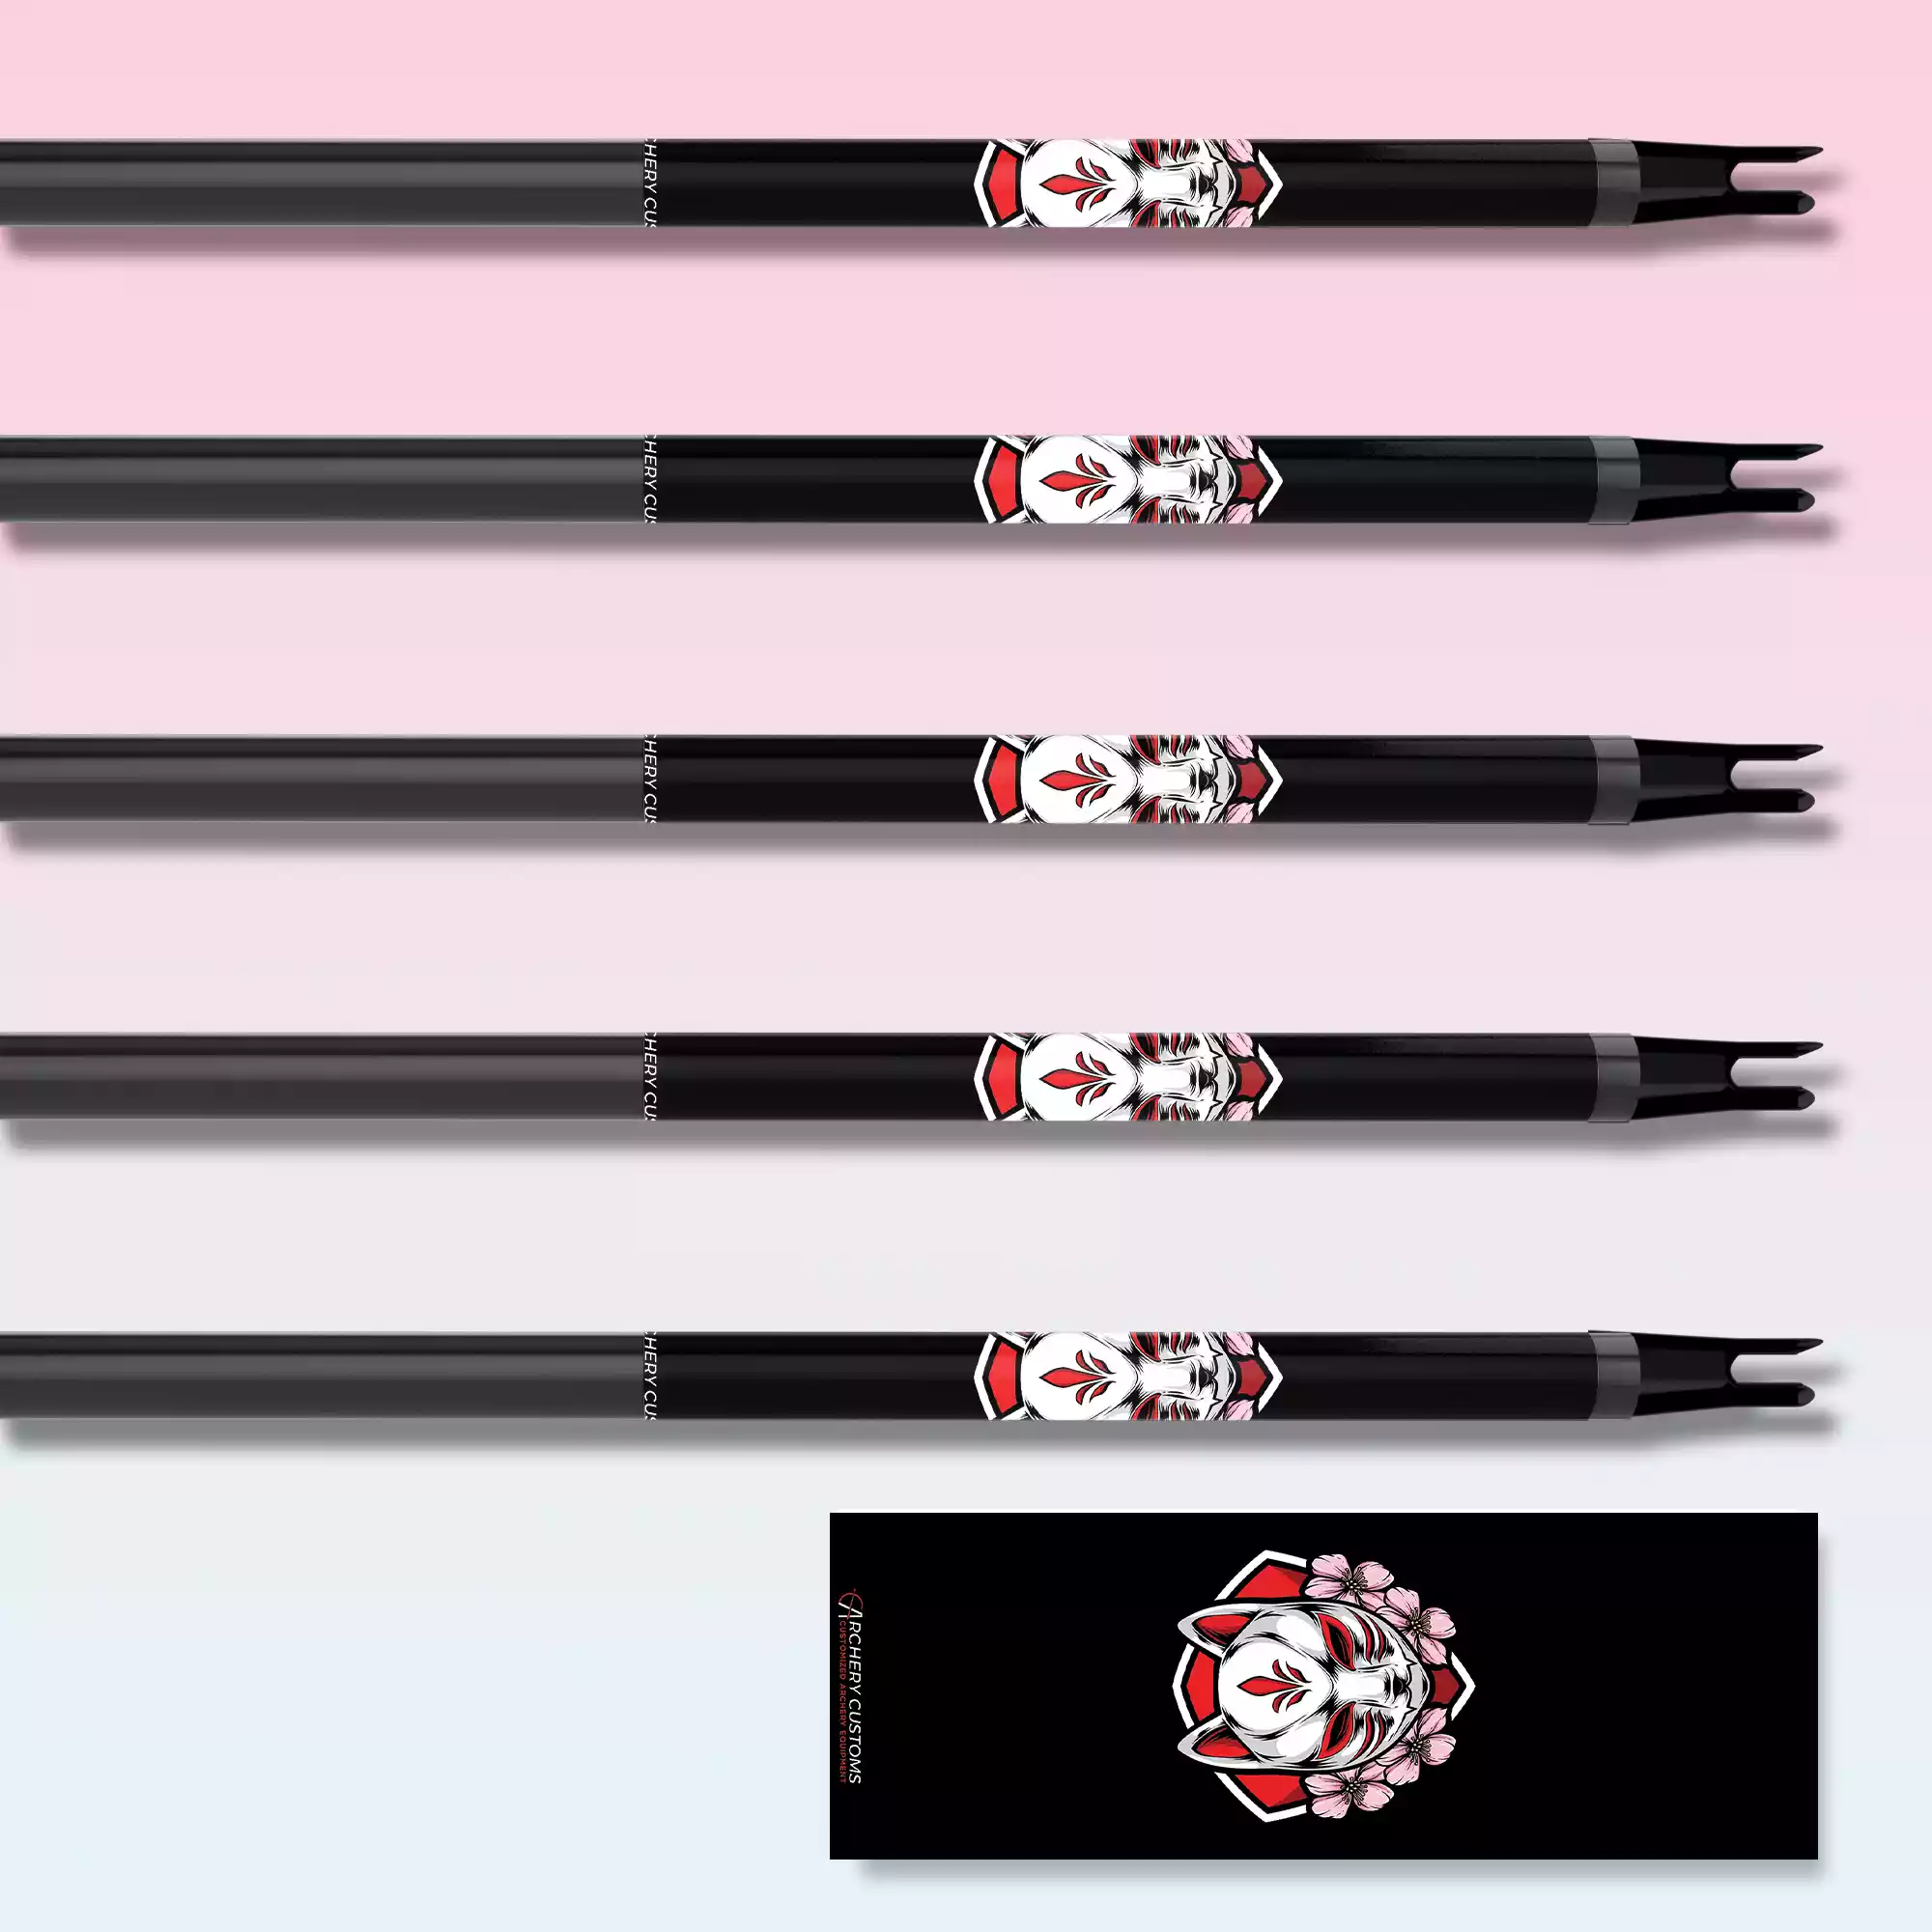 White Fox Spirit Design Arrow Wrap with Archery Customs logo